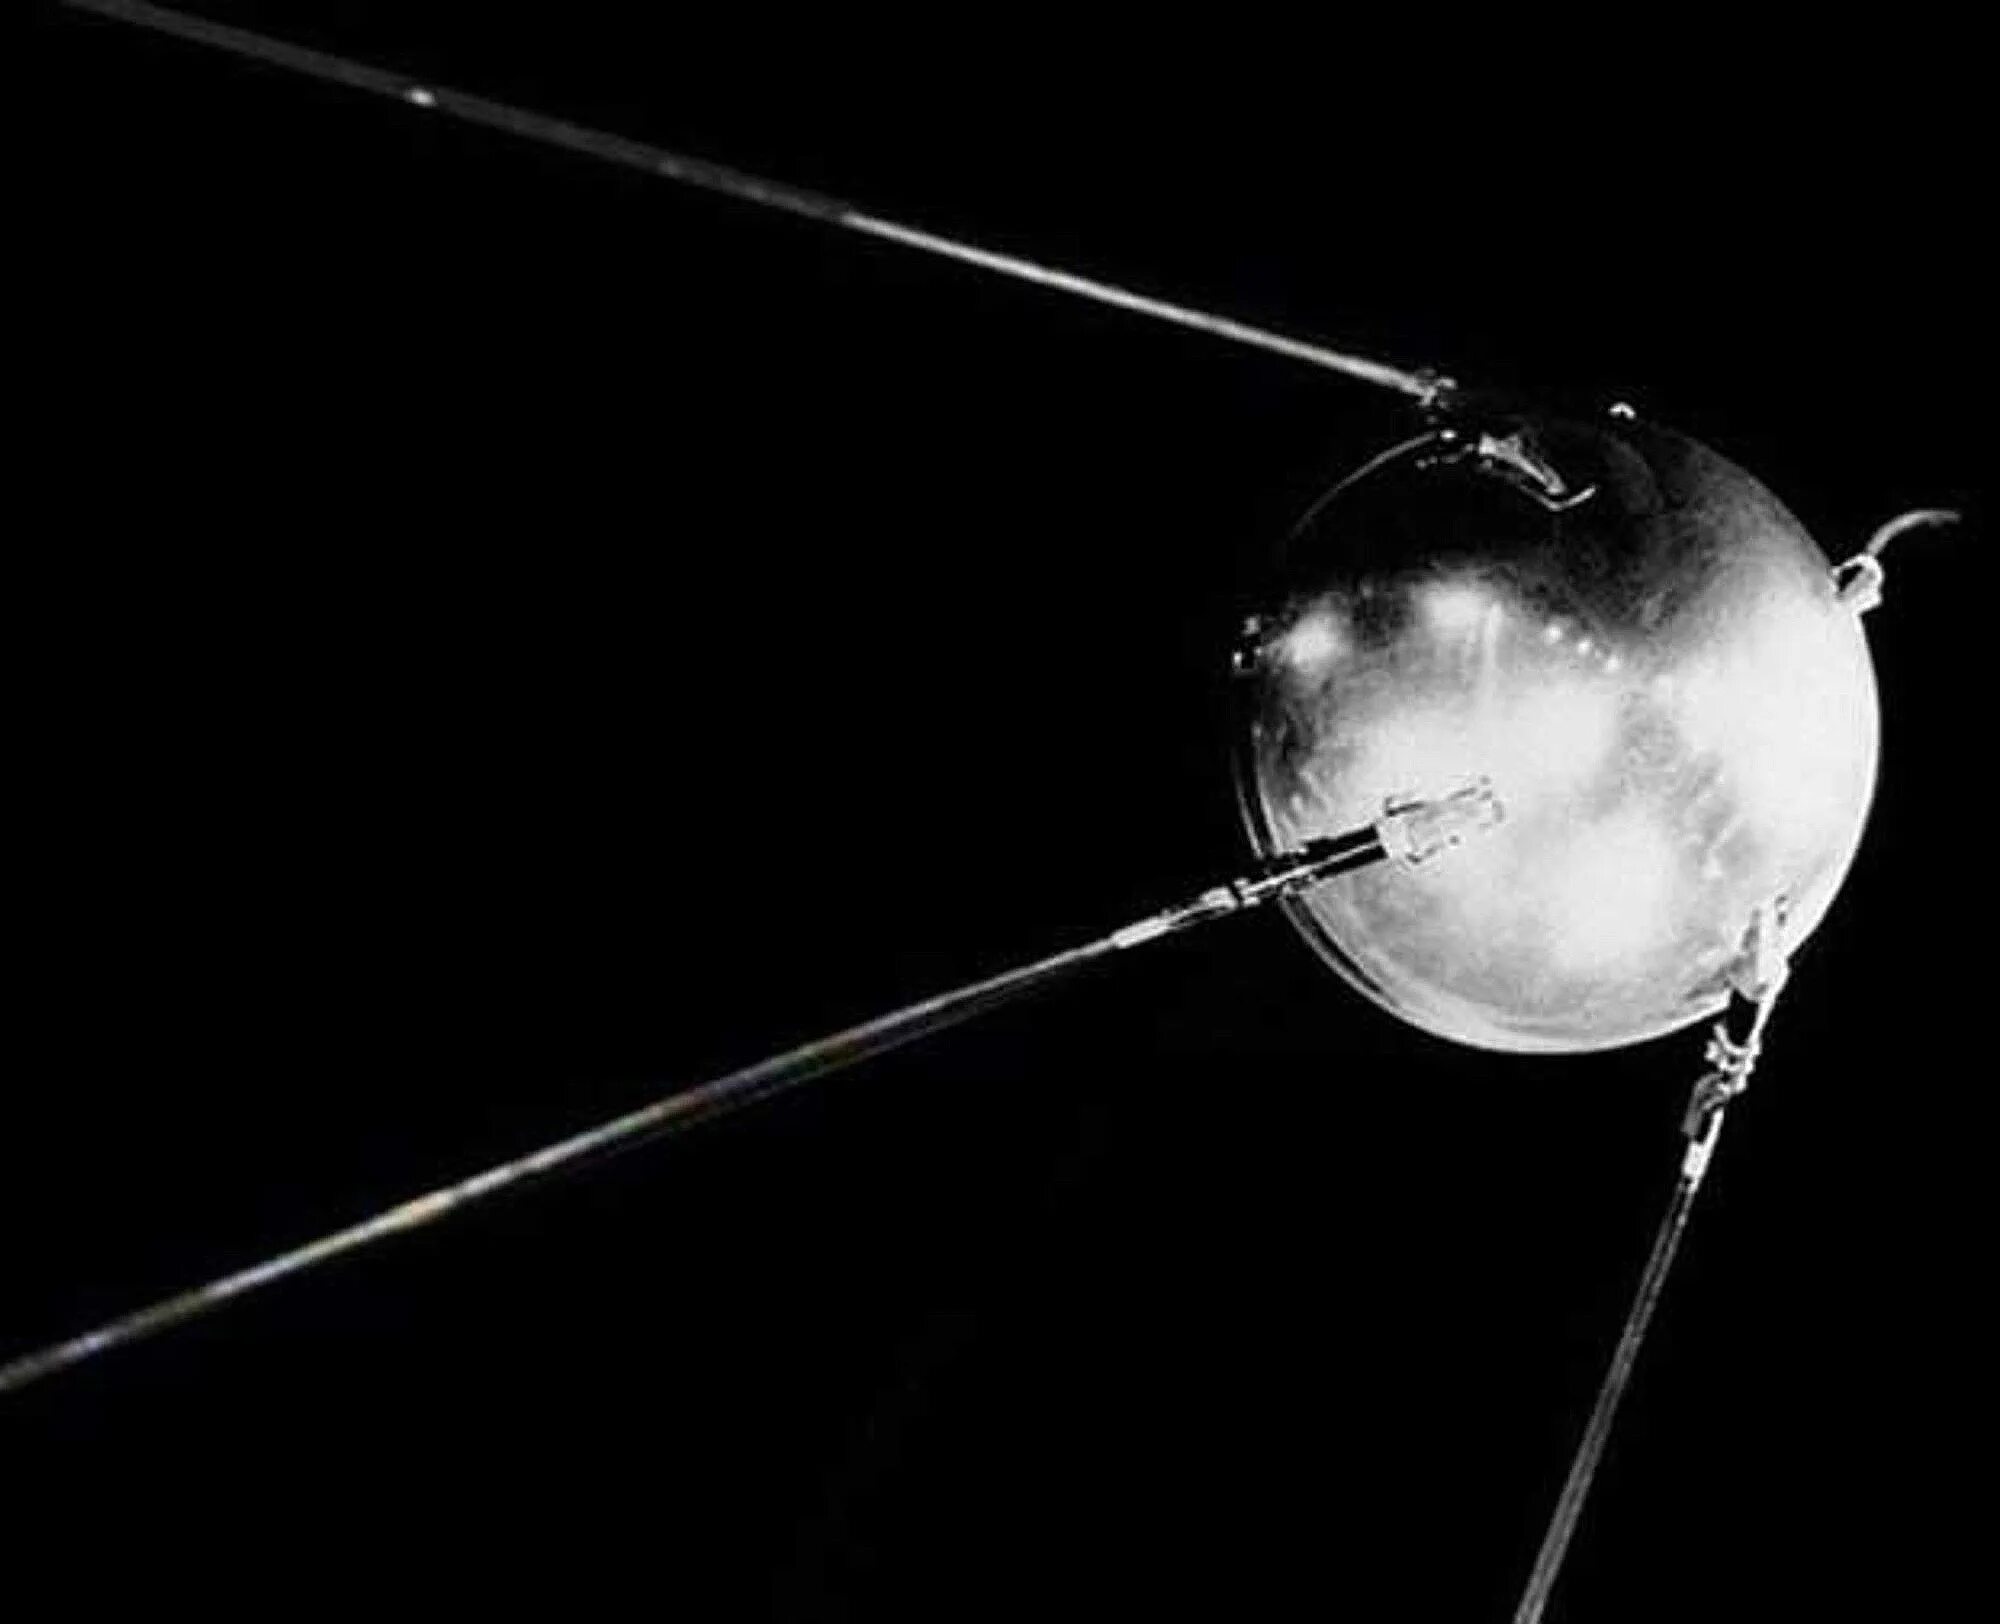 Название первого искусственного спутника земли. Спутник 1 первый искусственный Спутник земли. Первый искусственный Спутник земли 1957. Спутник 1 СССР. Искусственный Спутник СССР 1957.